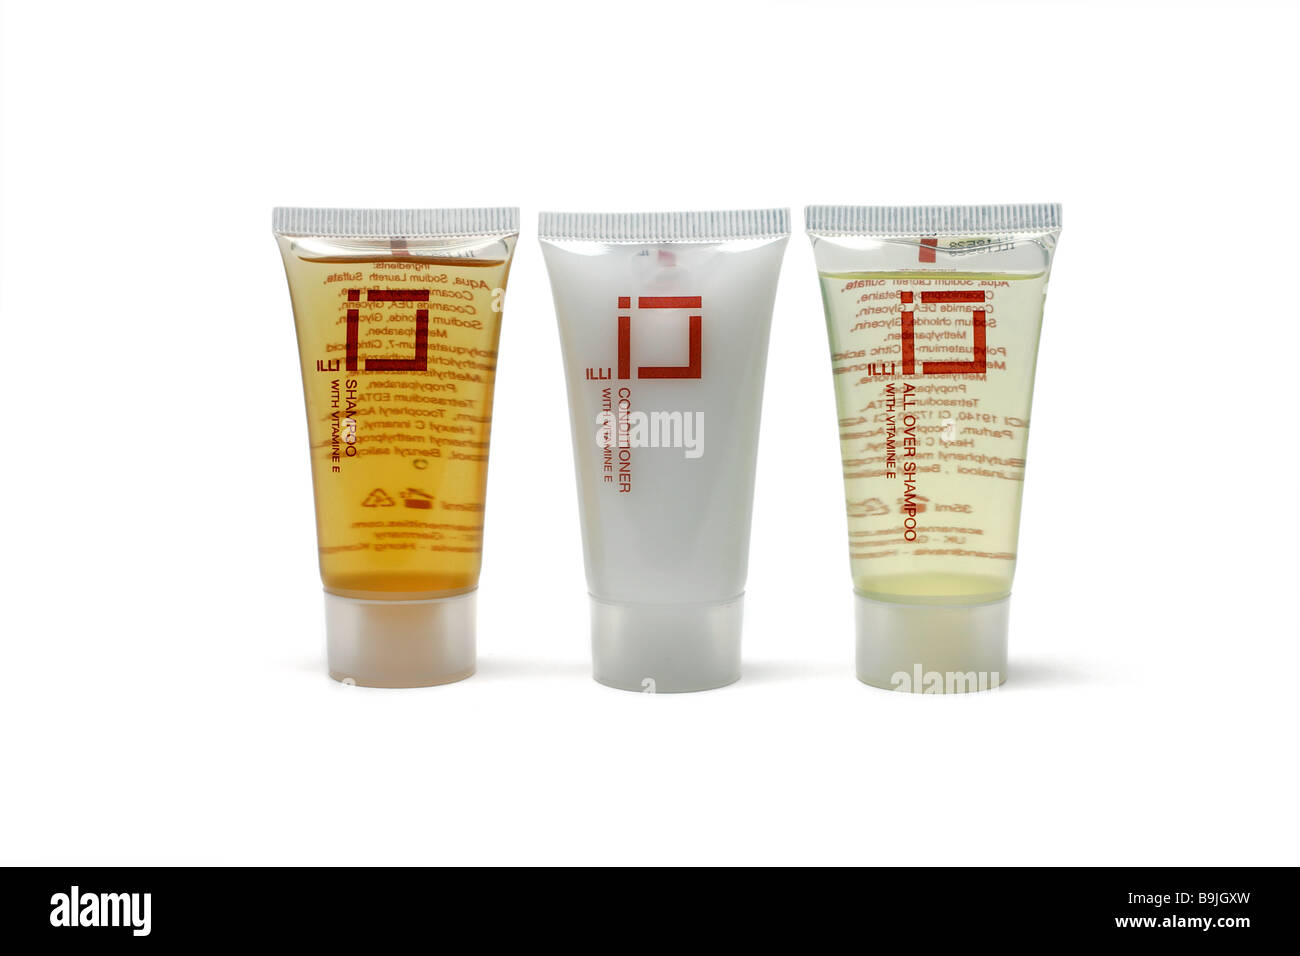 Hôtel shampooing cheveux Produits de toilette corps cosmétique flacon baigneuse lotion gel produit produits douche douche Banque D'Images